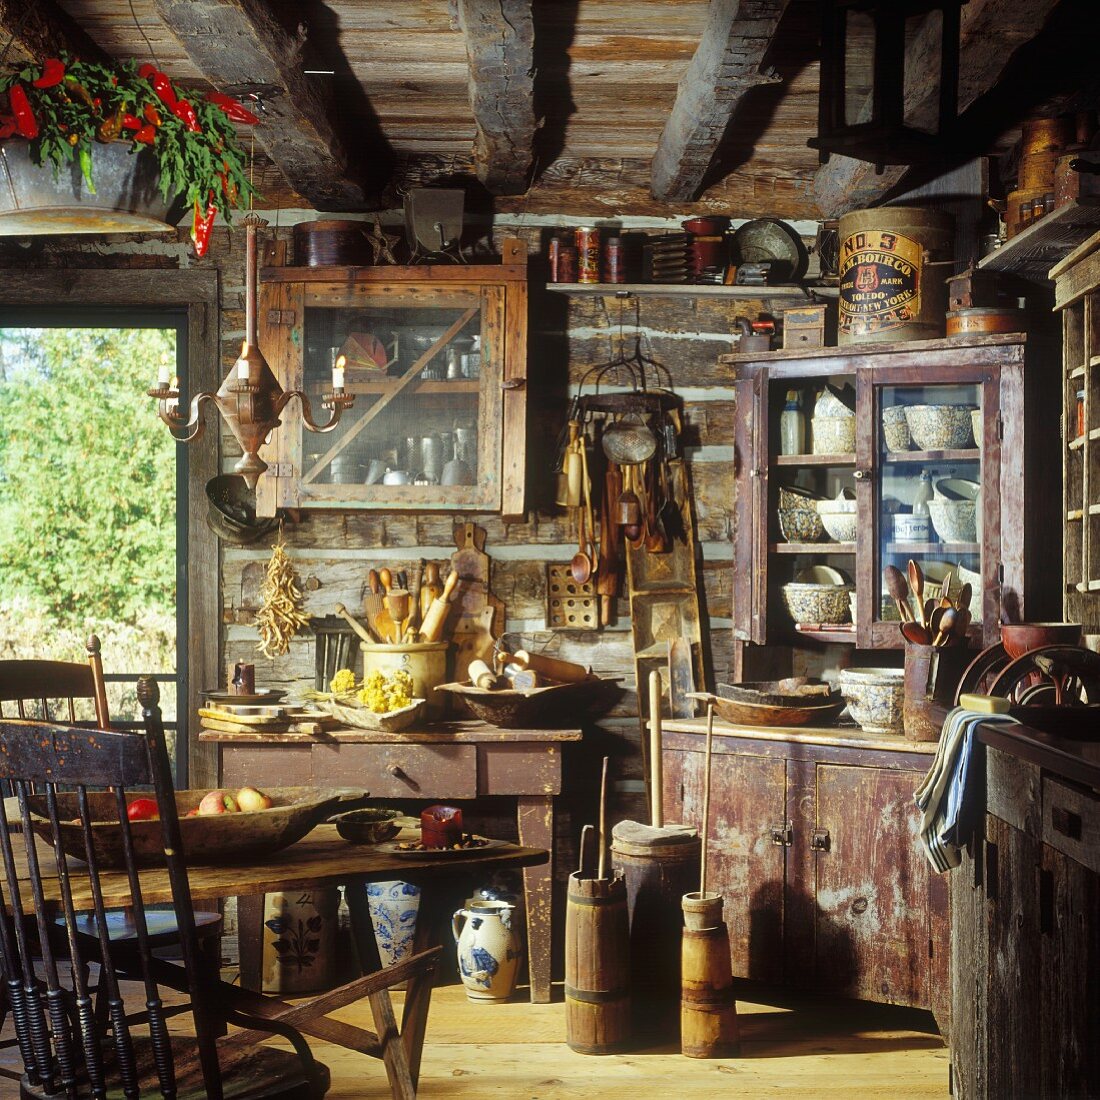 Rustikale Blockhausküche mit Balkendecke und antiken Küchenutensilien